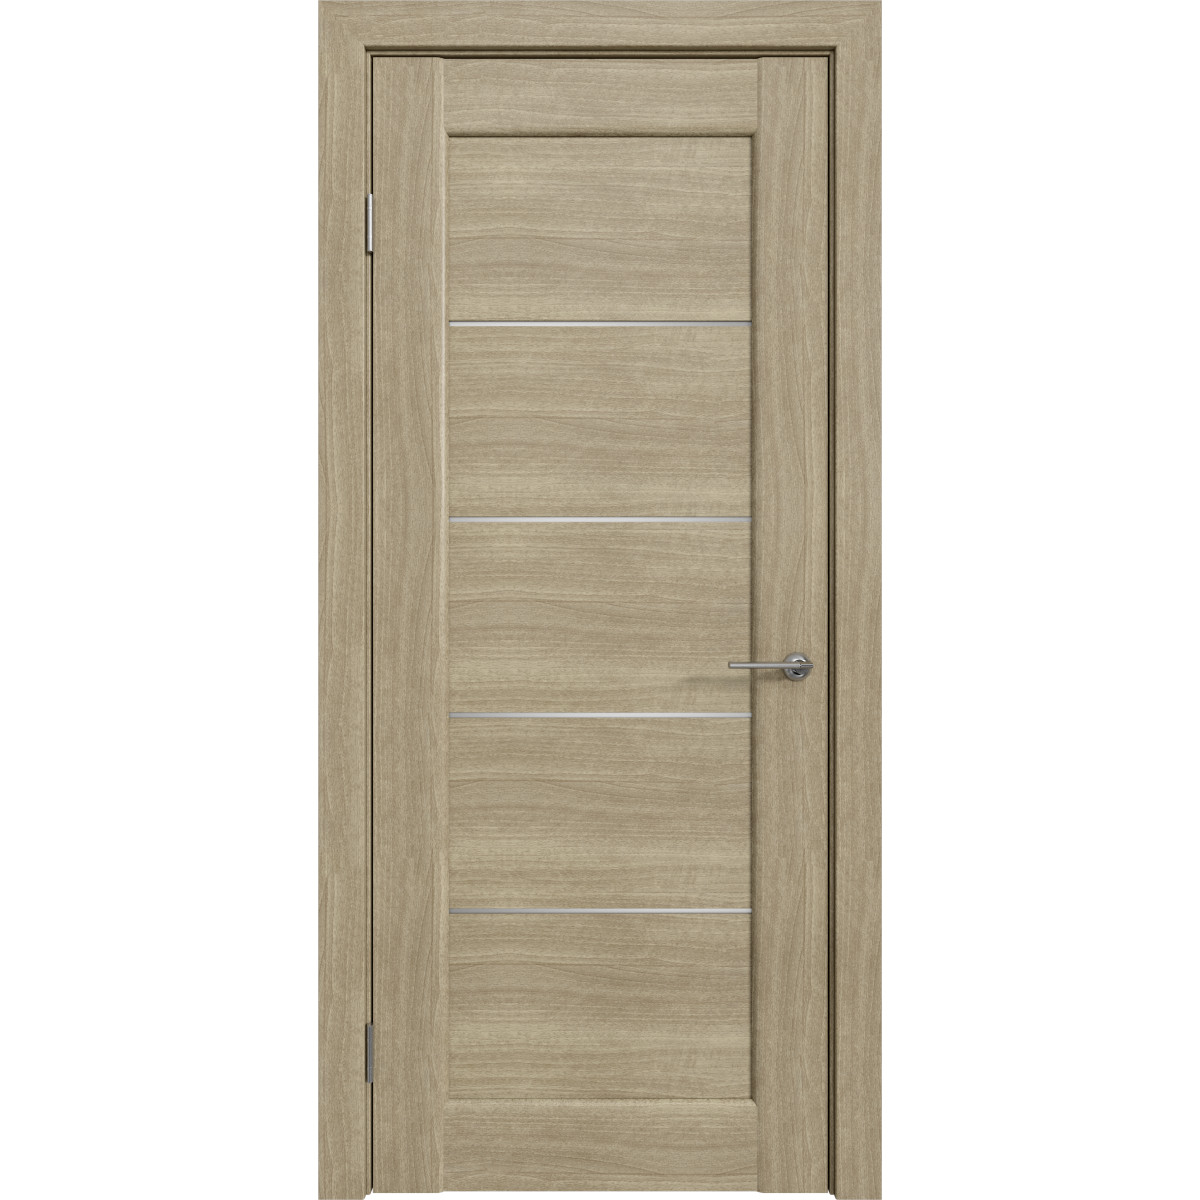 Дверь межкомнатная остеклённая Дельта горизонтальная 90x200 см, ПВХ, цвет ольха серебряная, с фурнитурой